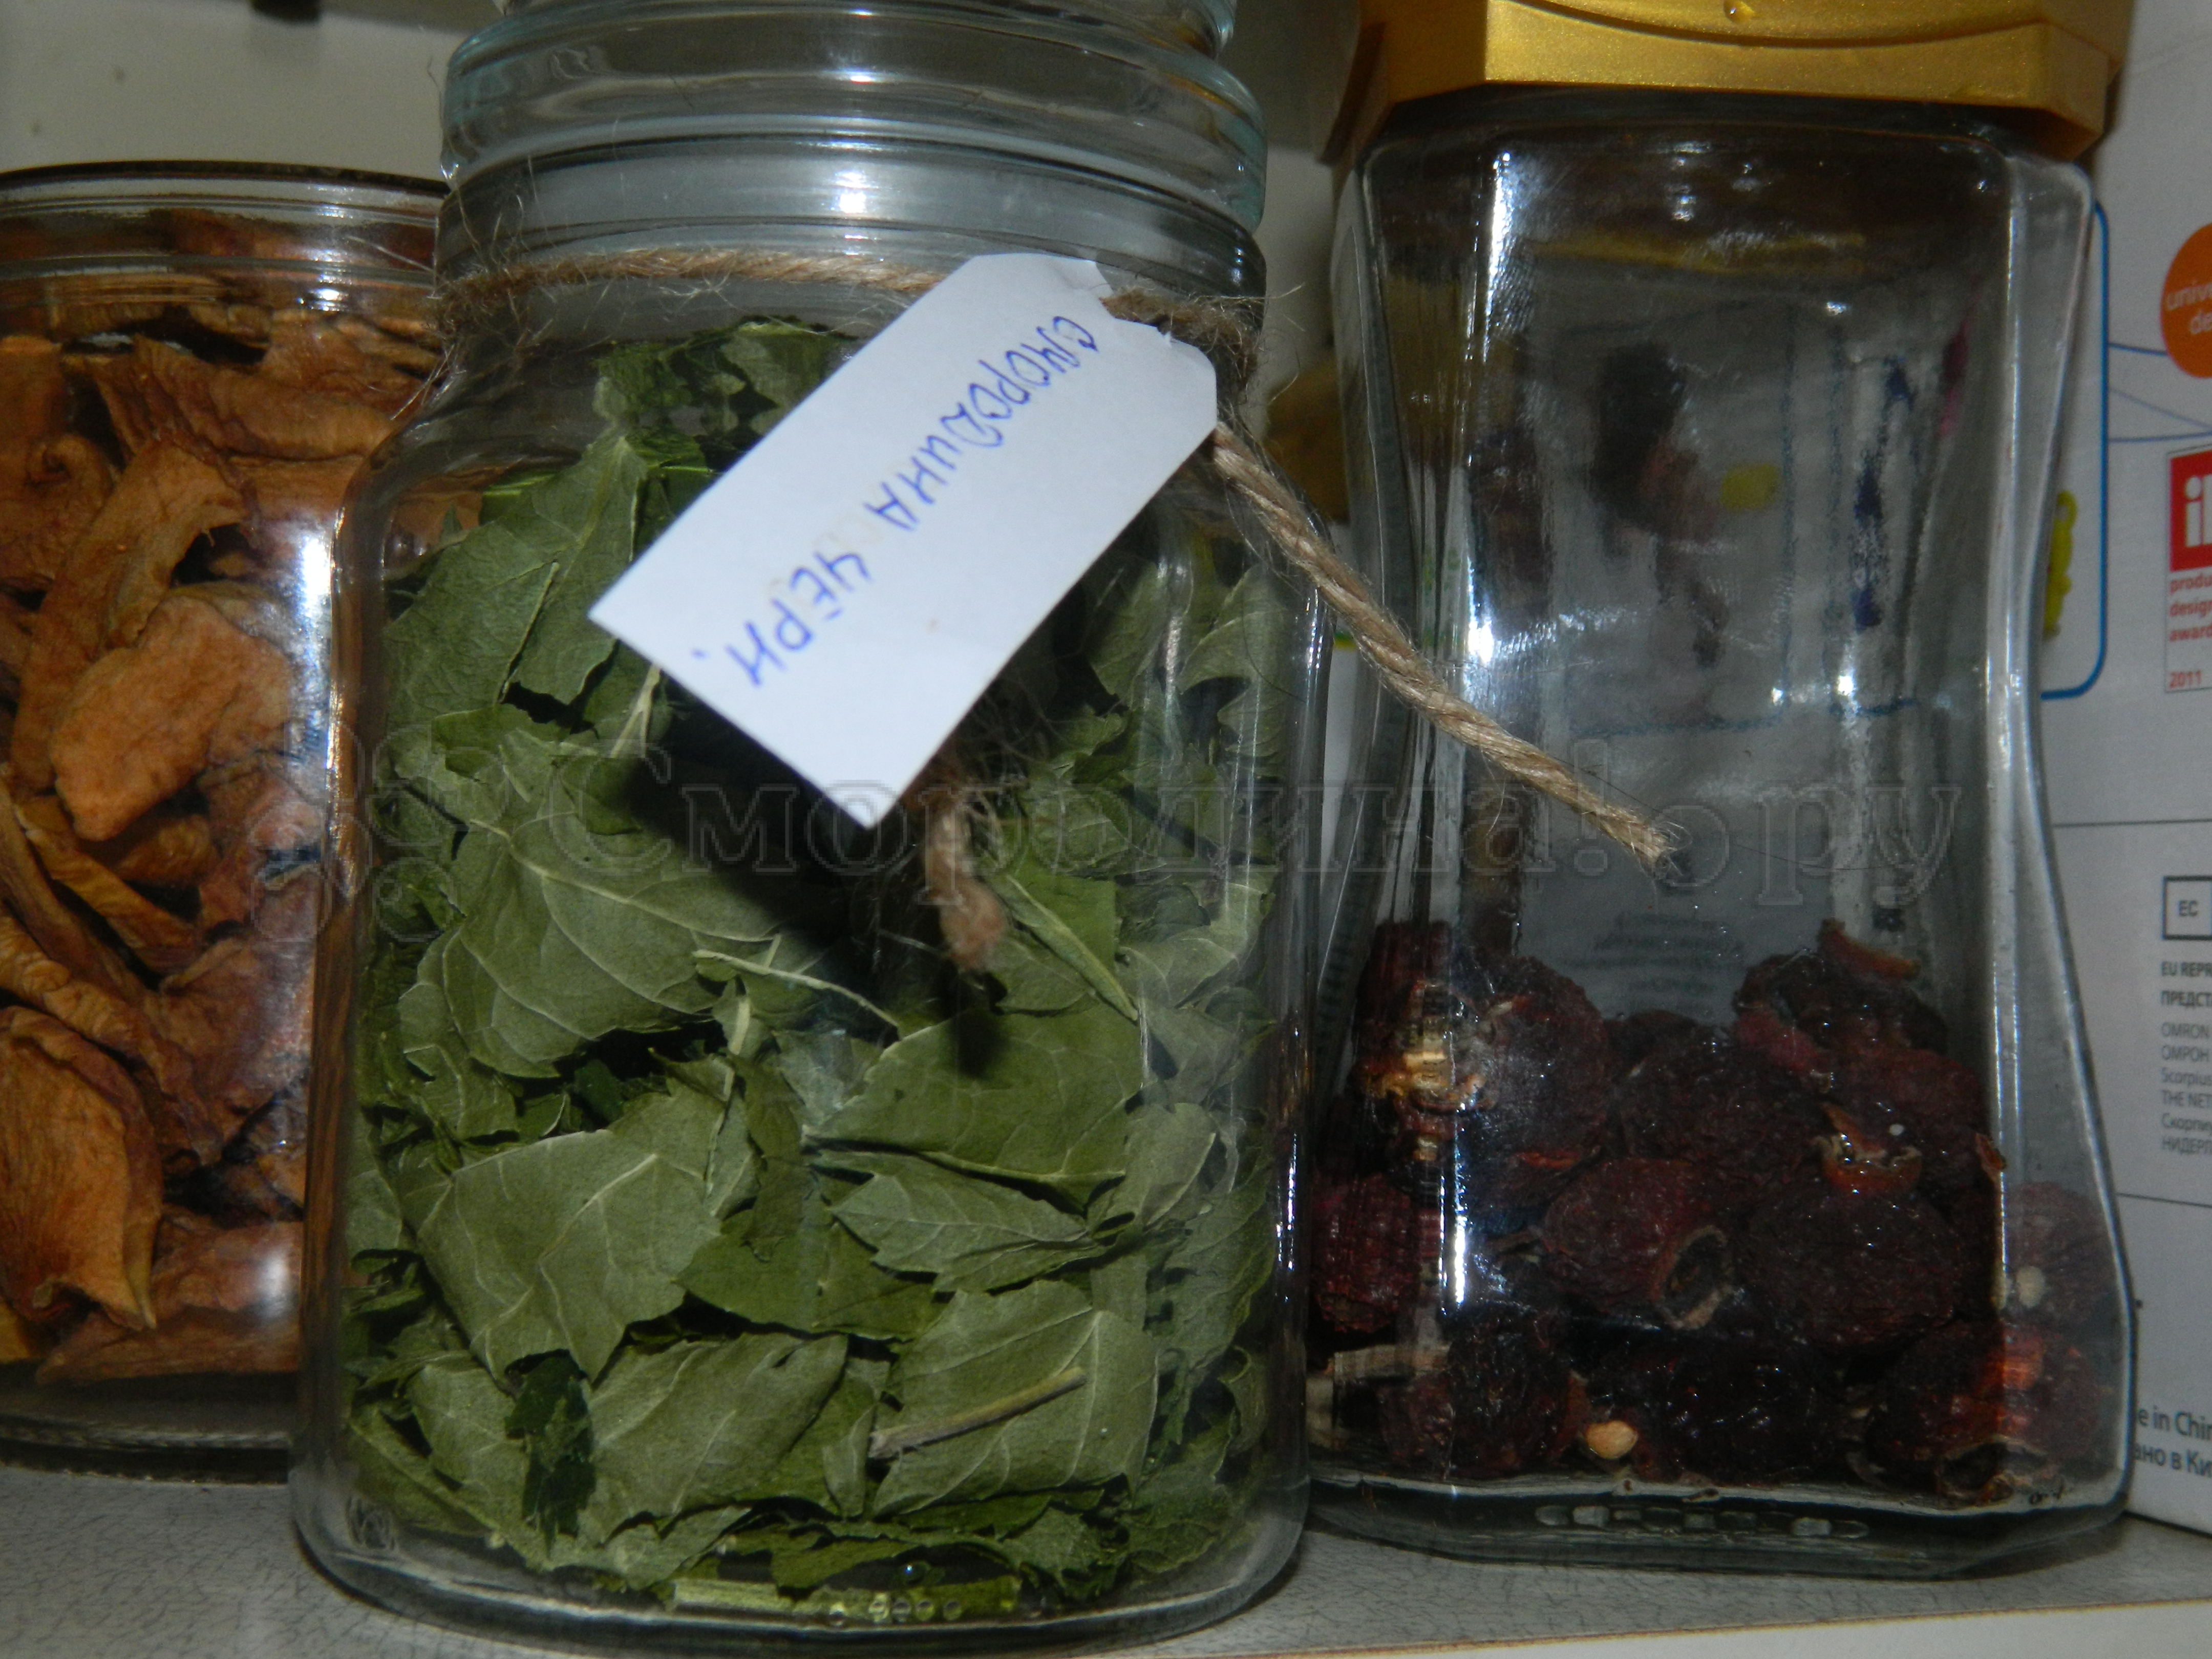 Когда собирать листья смородины для чая: как сушить, заготовка и сбор